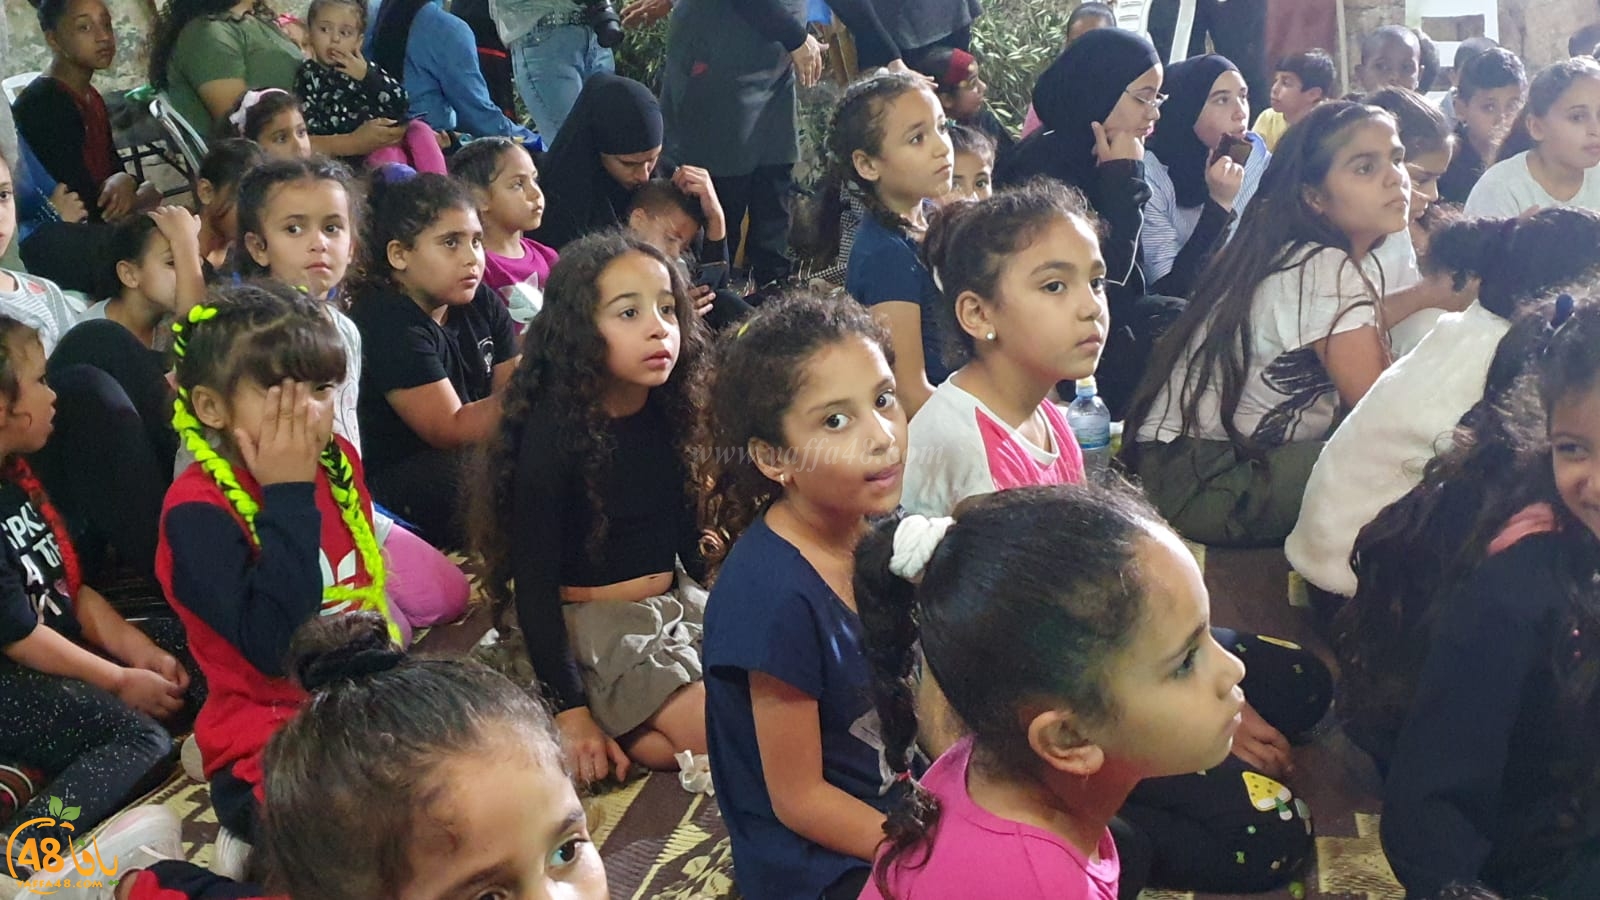  بالفيديو: مشاركة واسعة من الأطفال في فعاليات الزيت والزيتون بمدينة اللد 